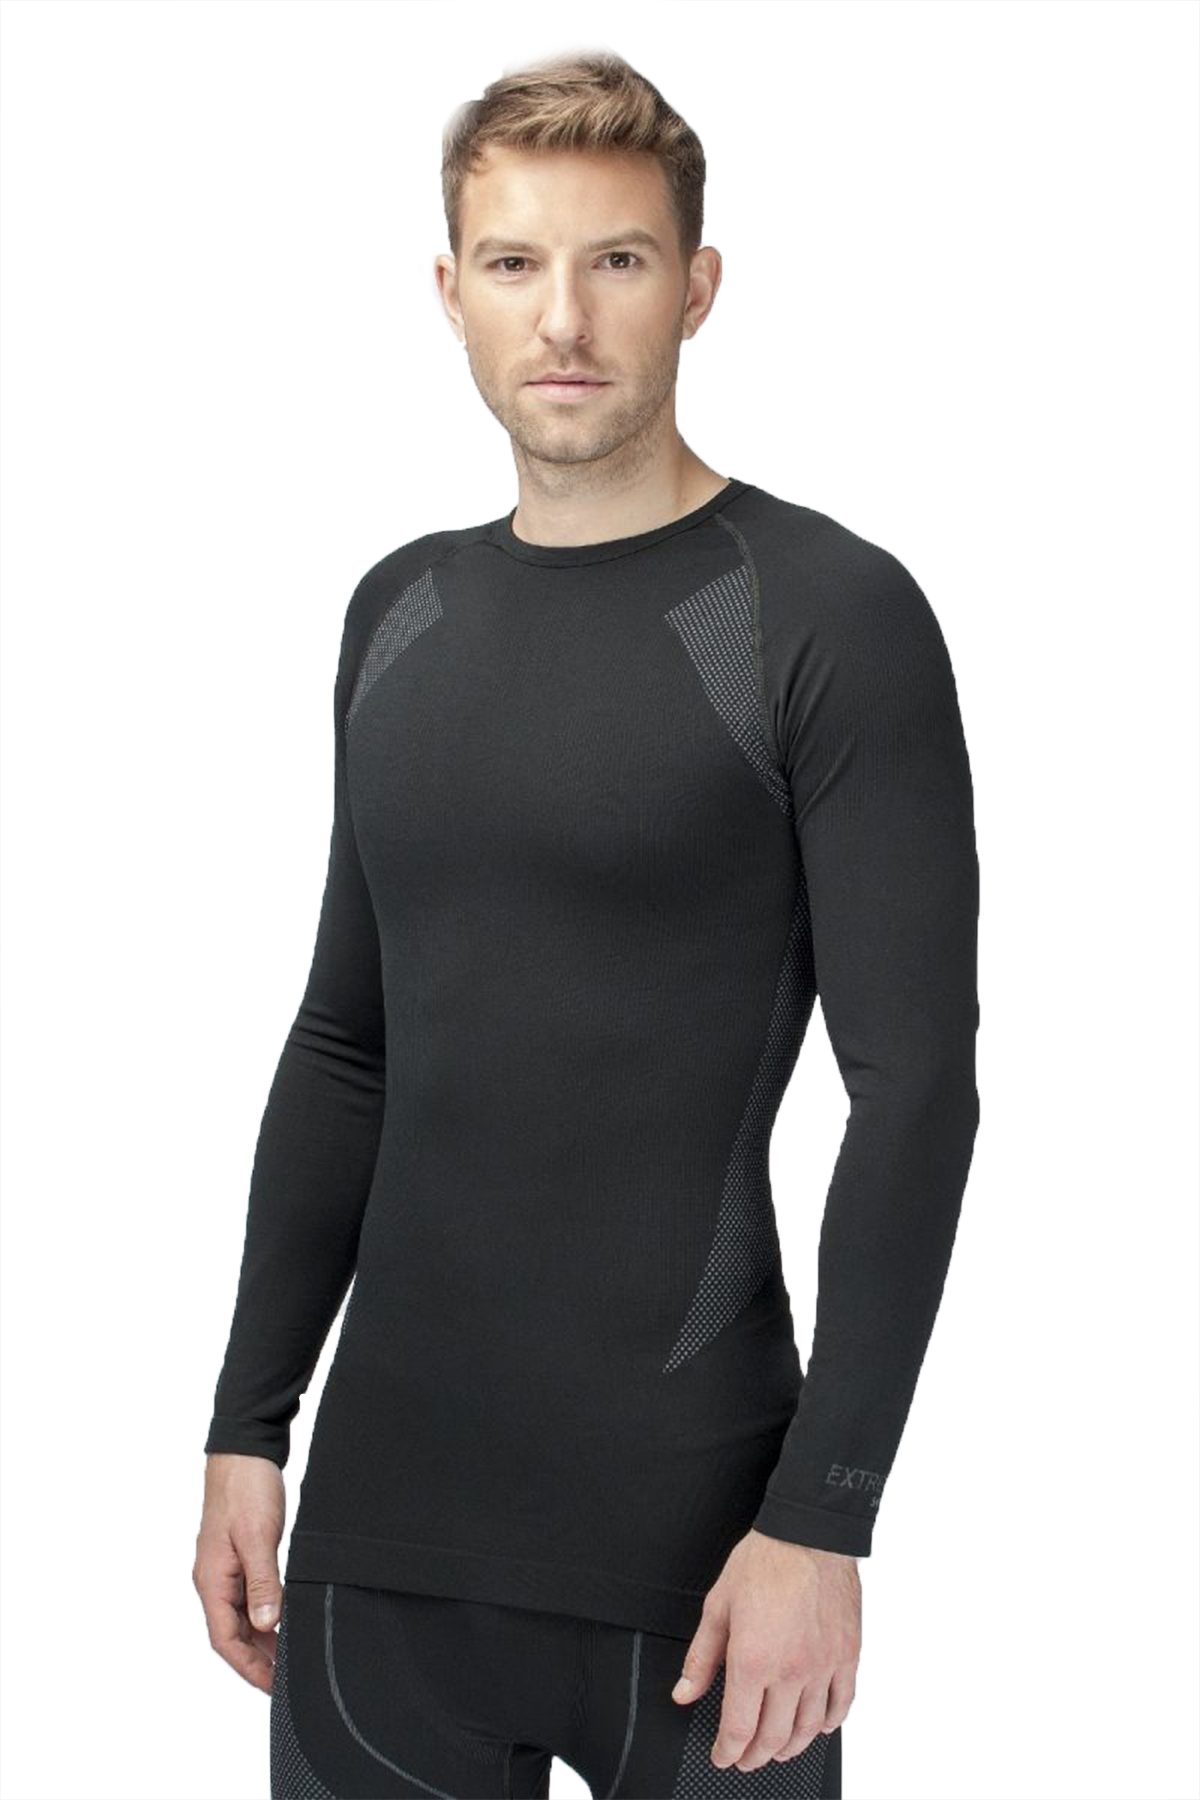 Thermoform HZT14001 - Extreme Erkek Siyah Seamless Termal Swearshirt